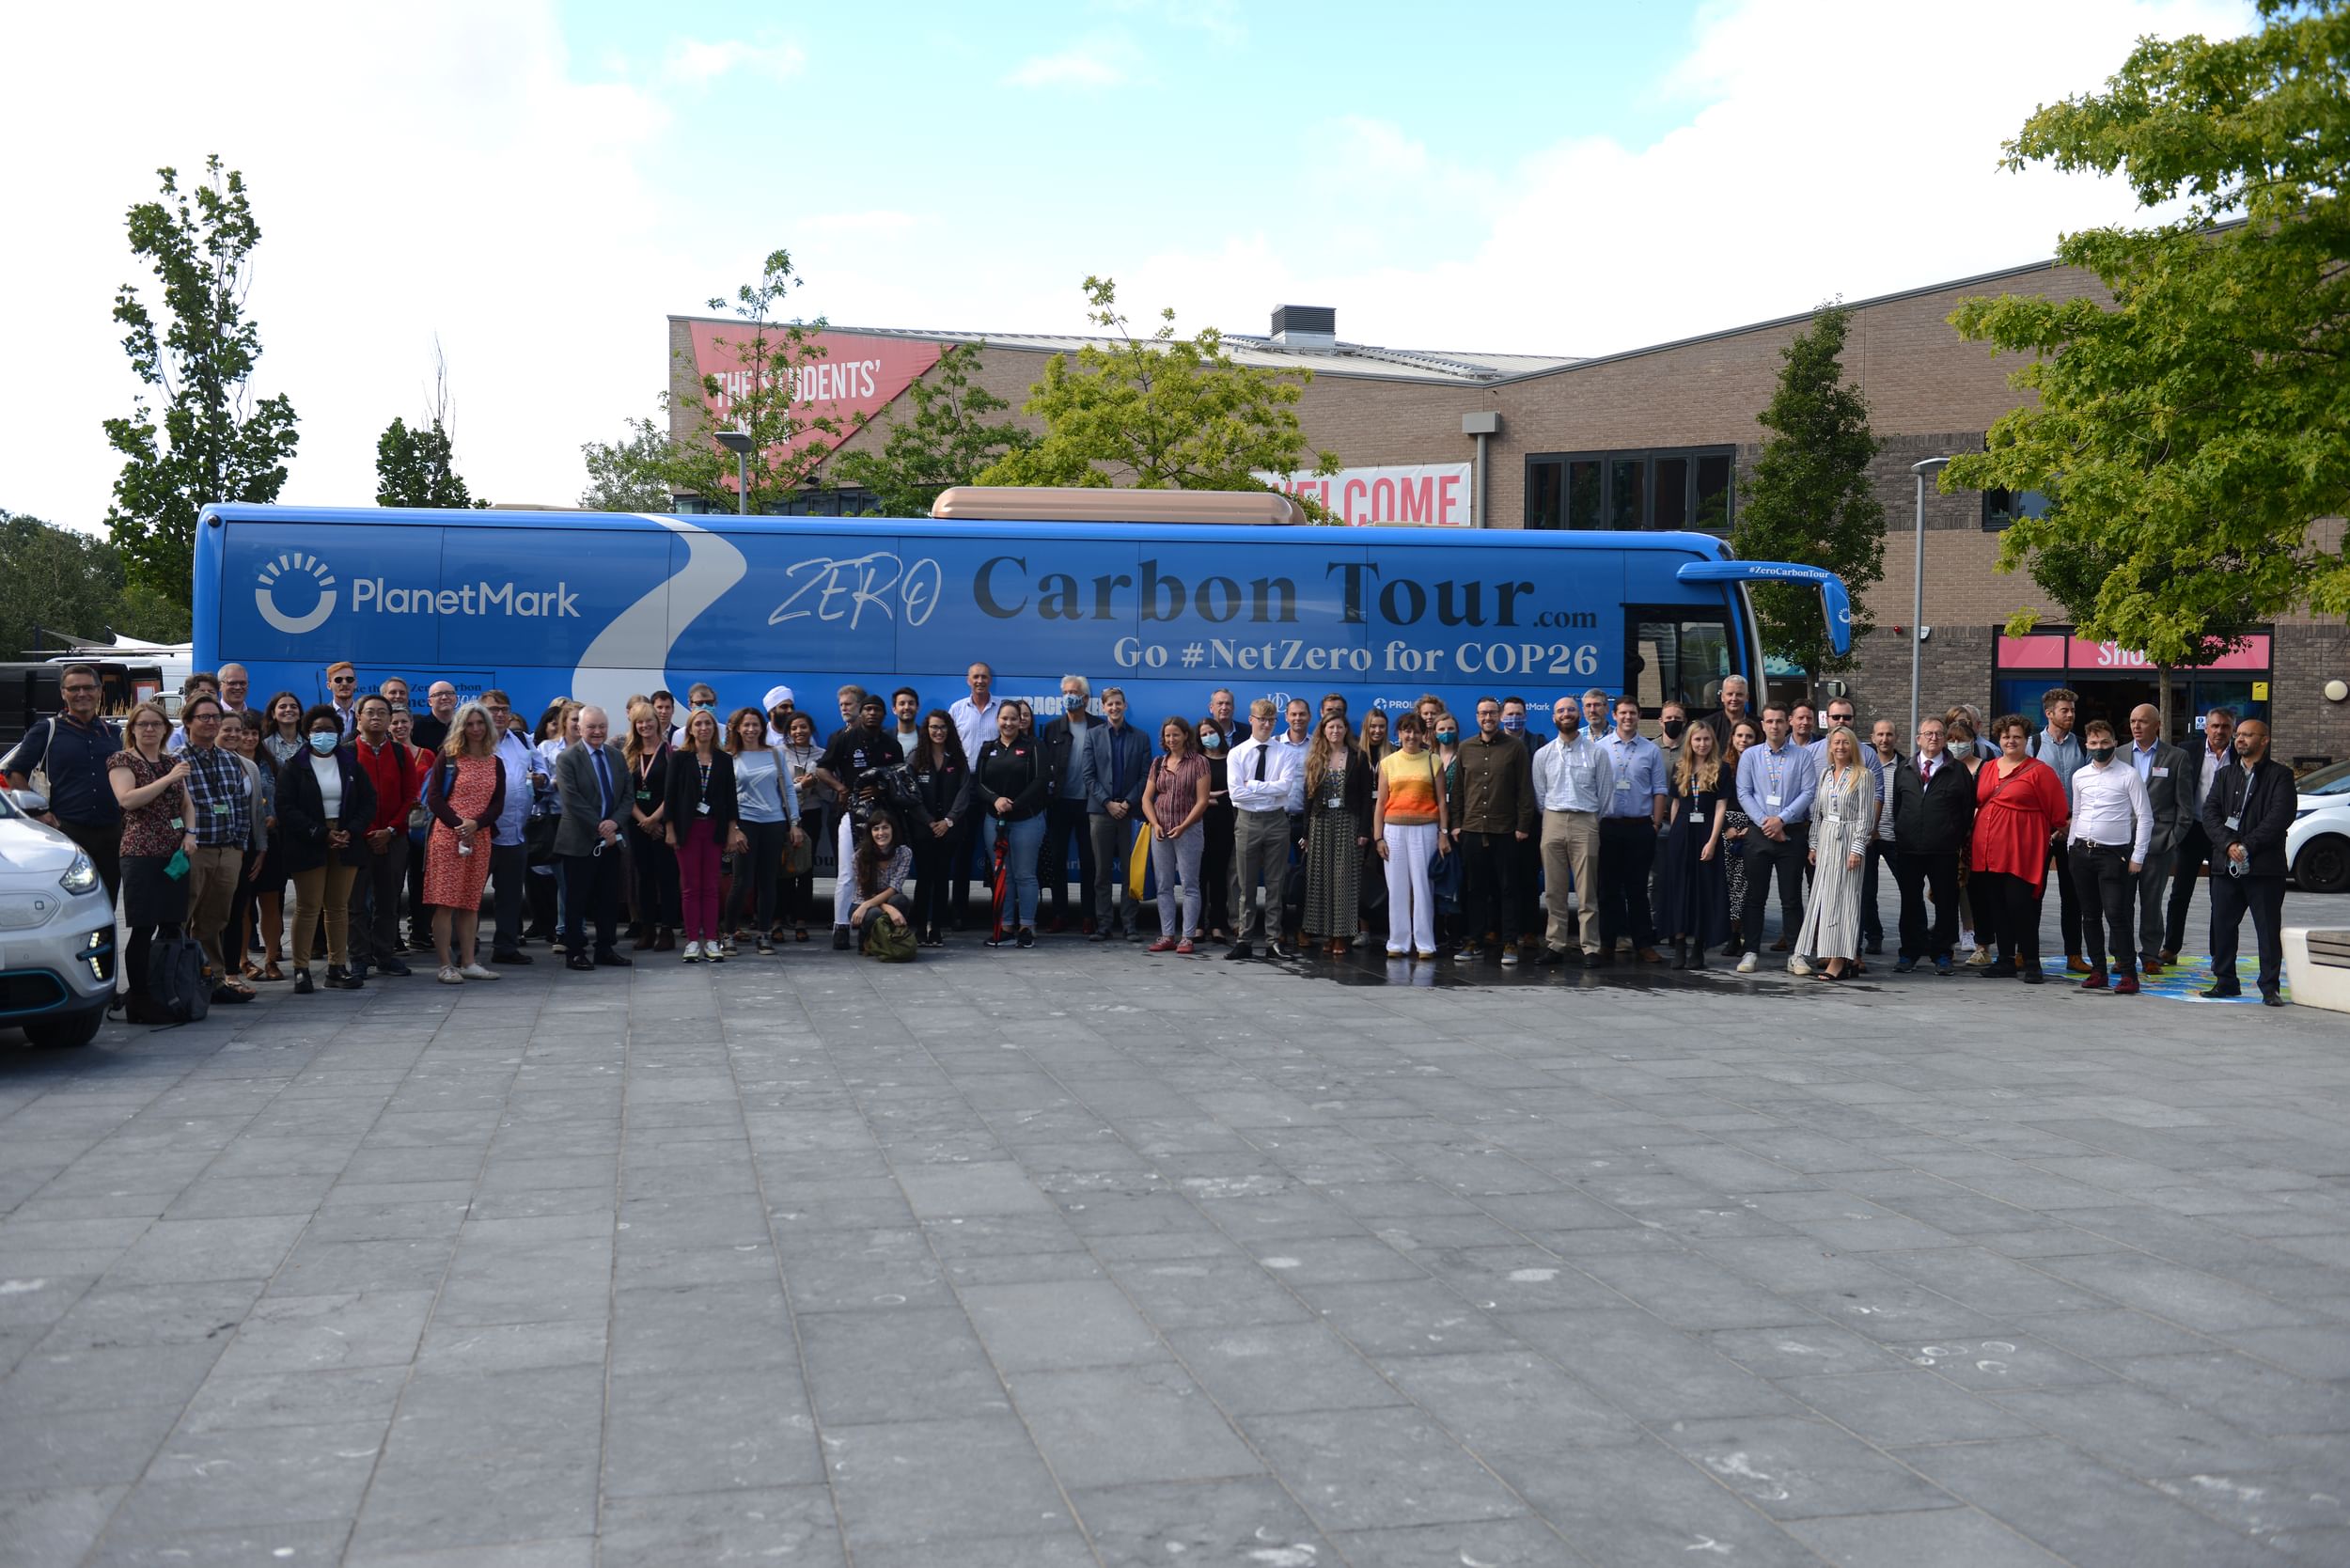 Zero Carbon tour bus